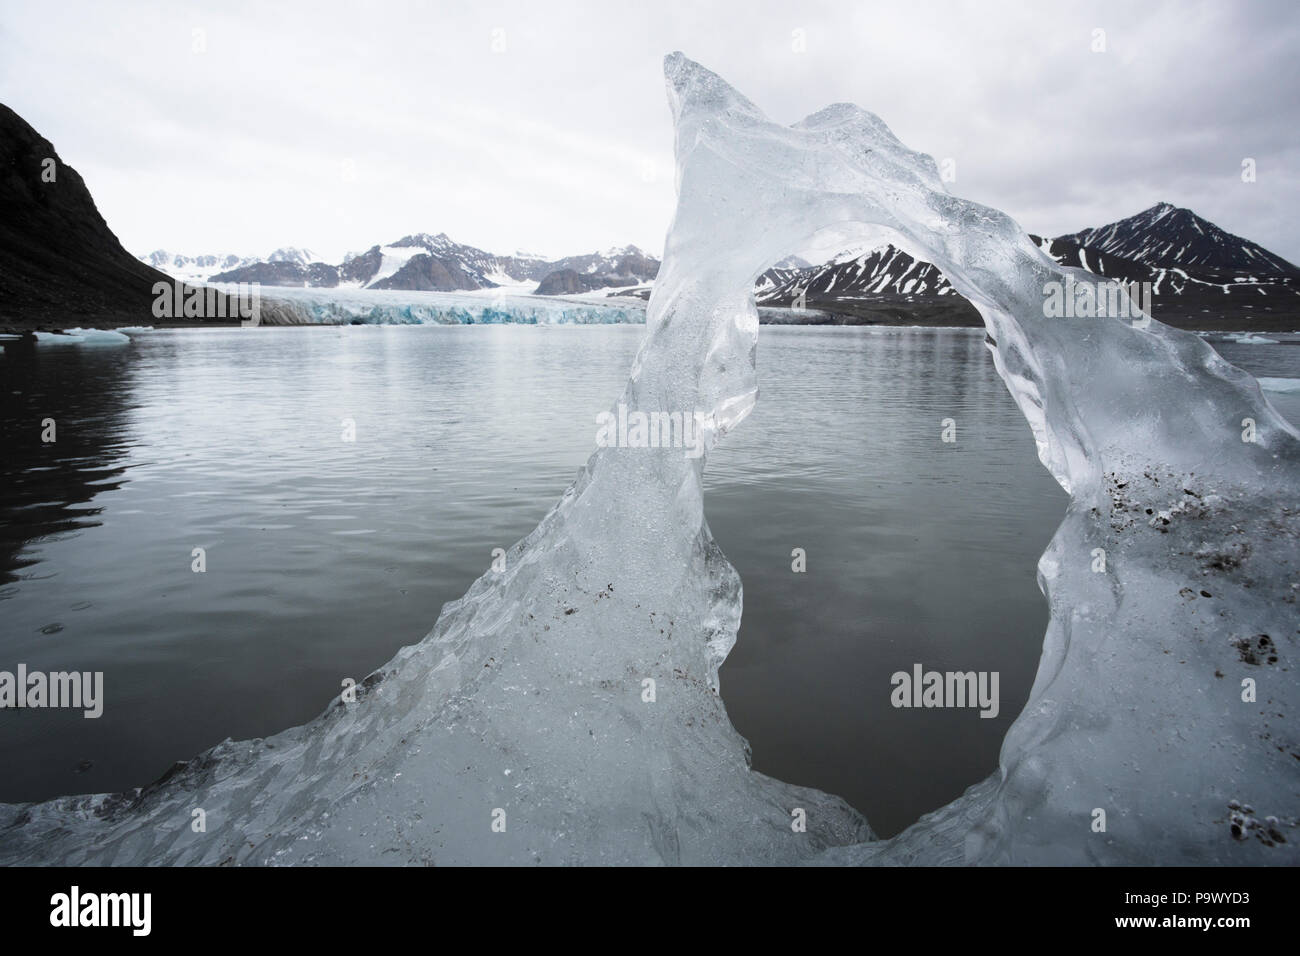 Morceau de glace, près de Glacier 14 Juillet, France Banque D'Images